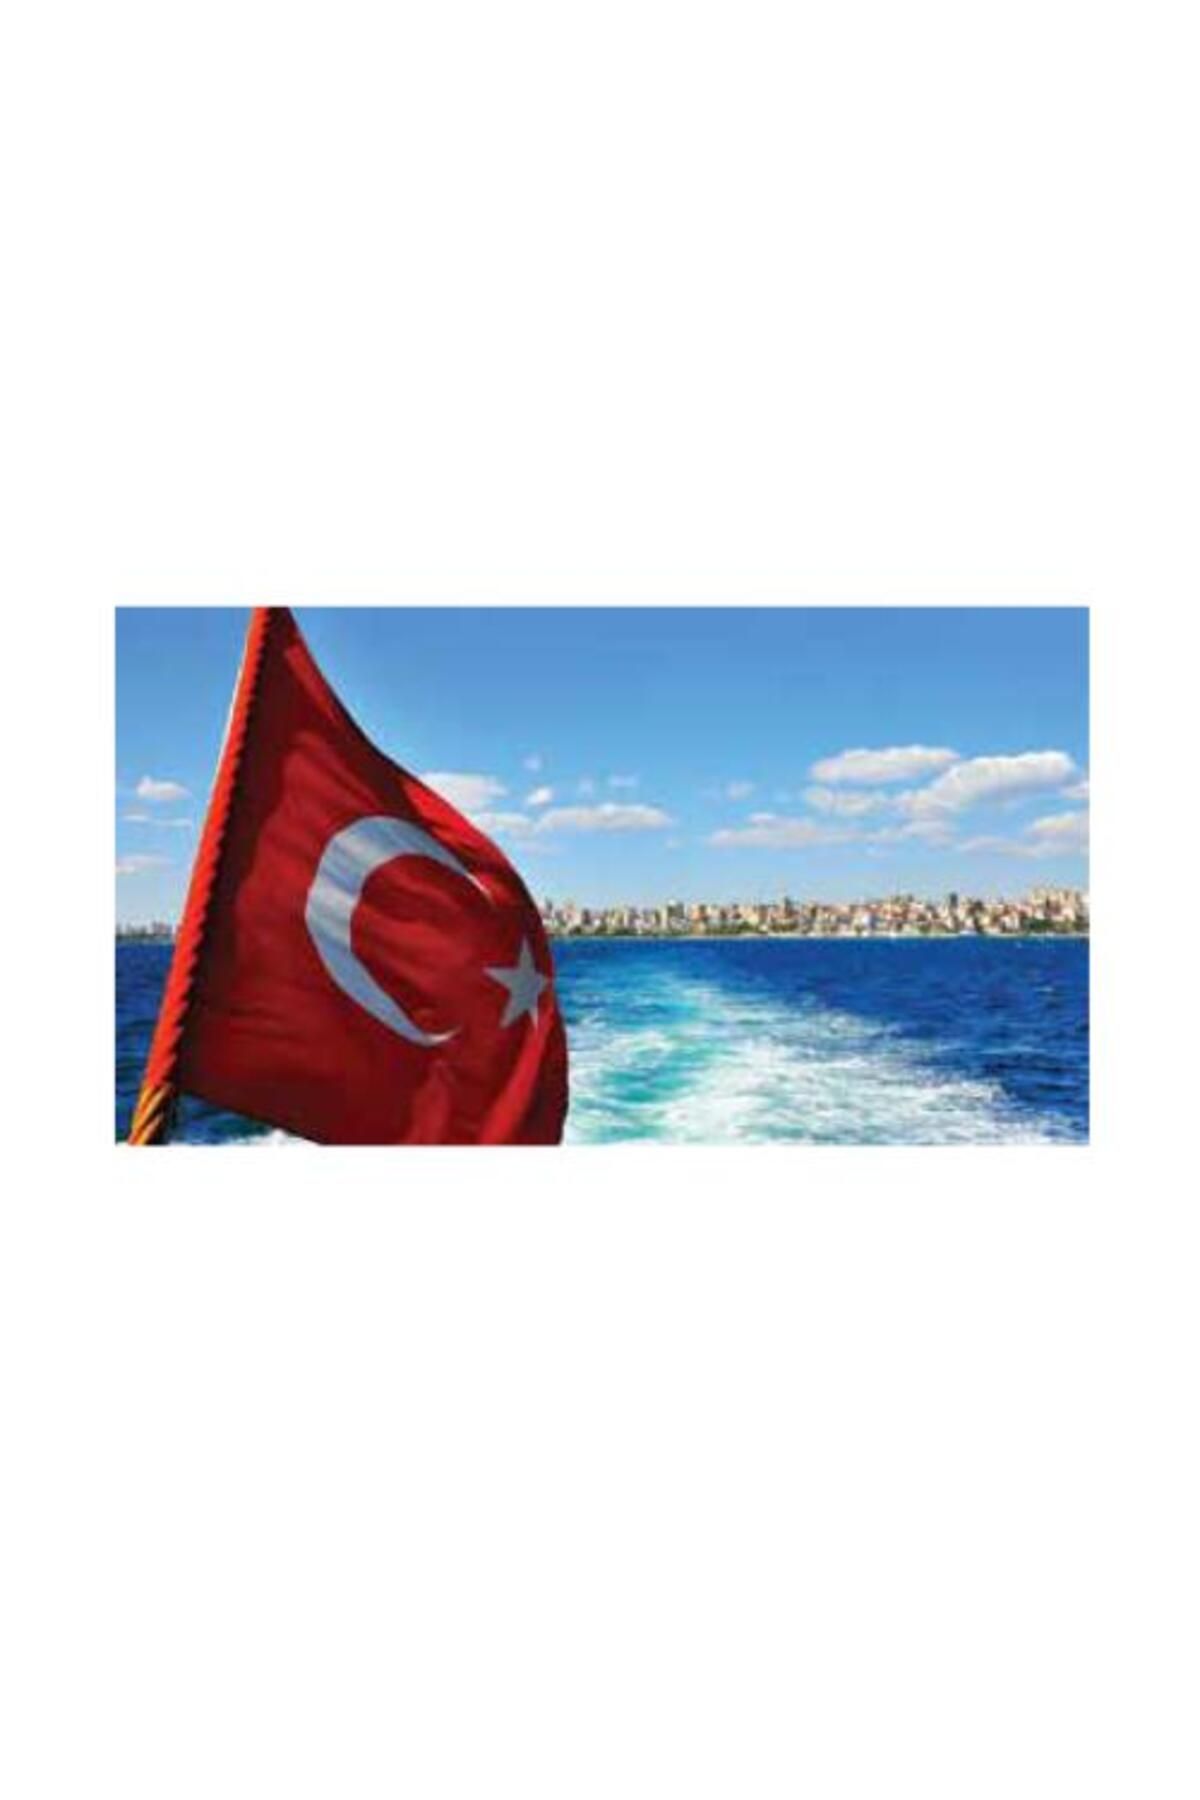 KALE Türk Bayrağı 100x150cm